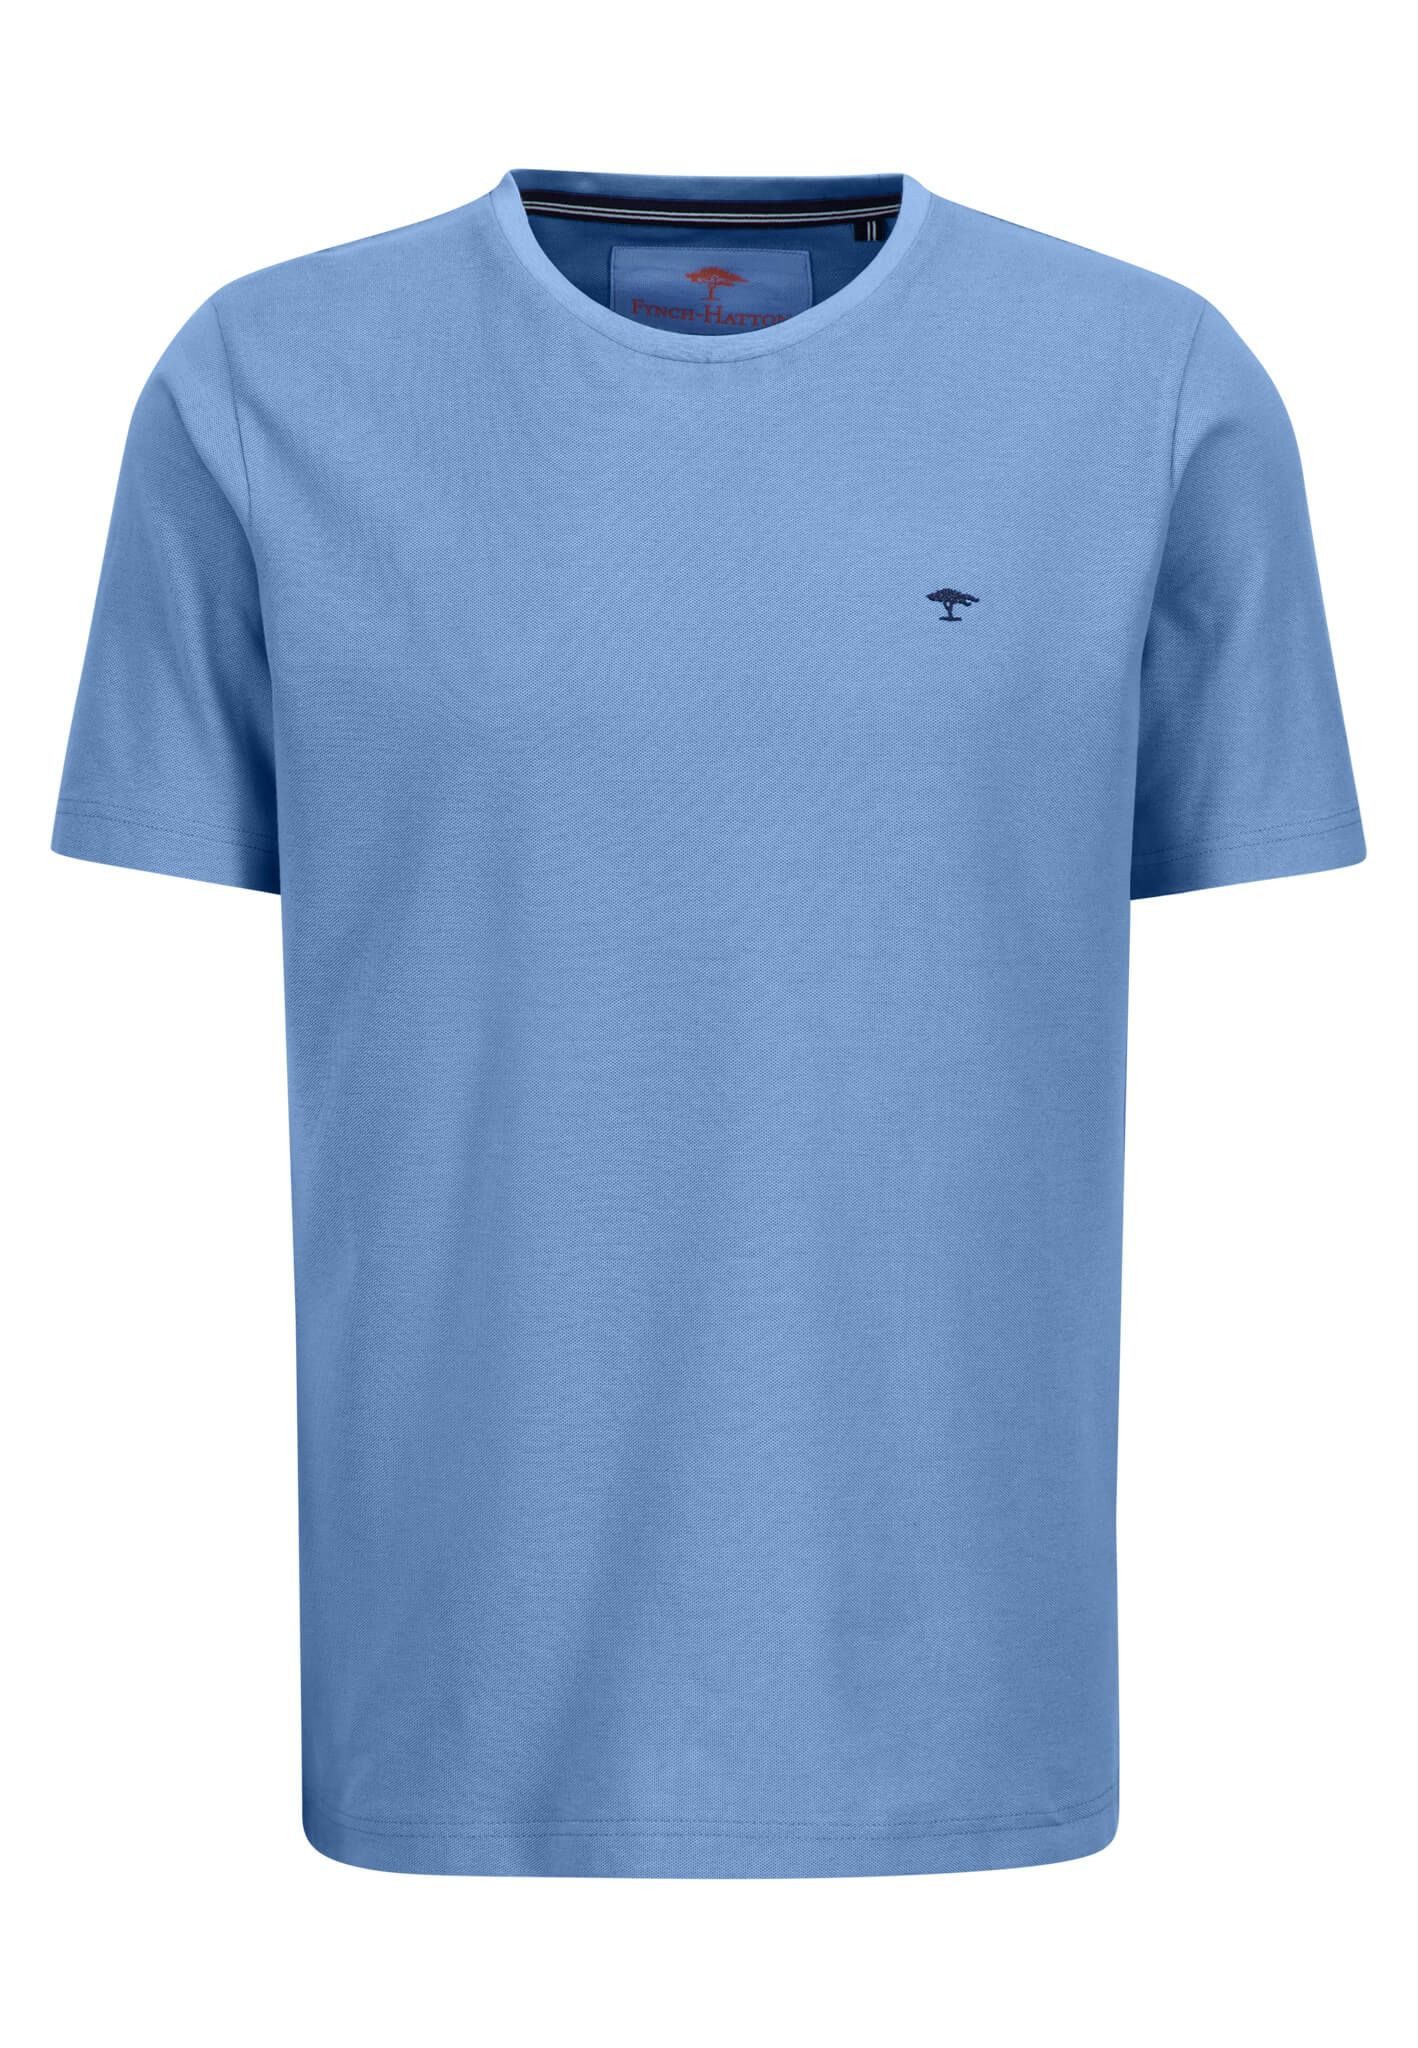 FYNCH-HATTON T-Shirt - Pique - Poloshirt ohne Kragen